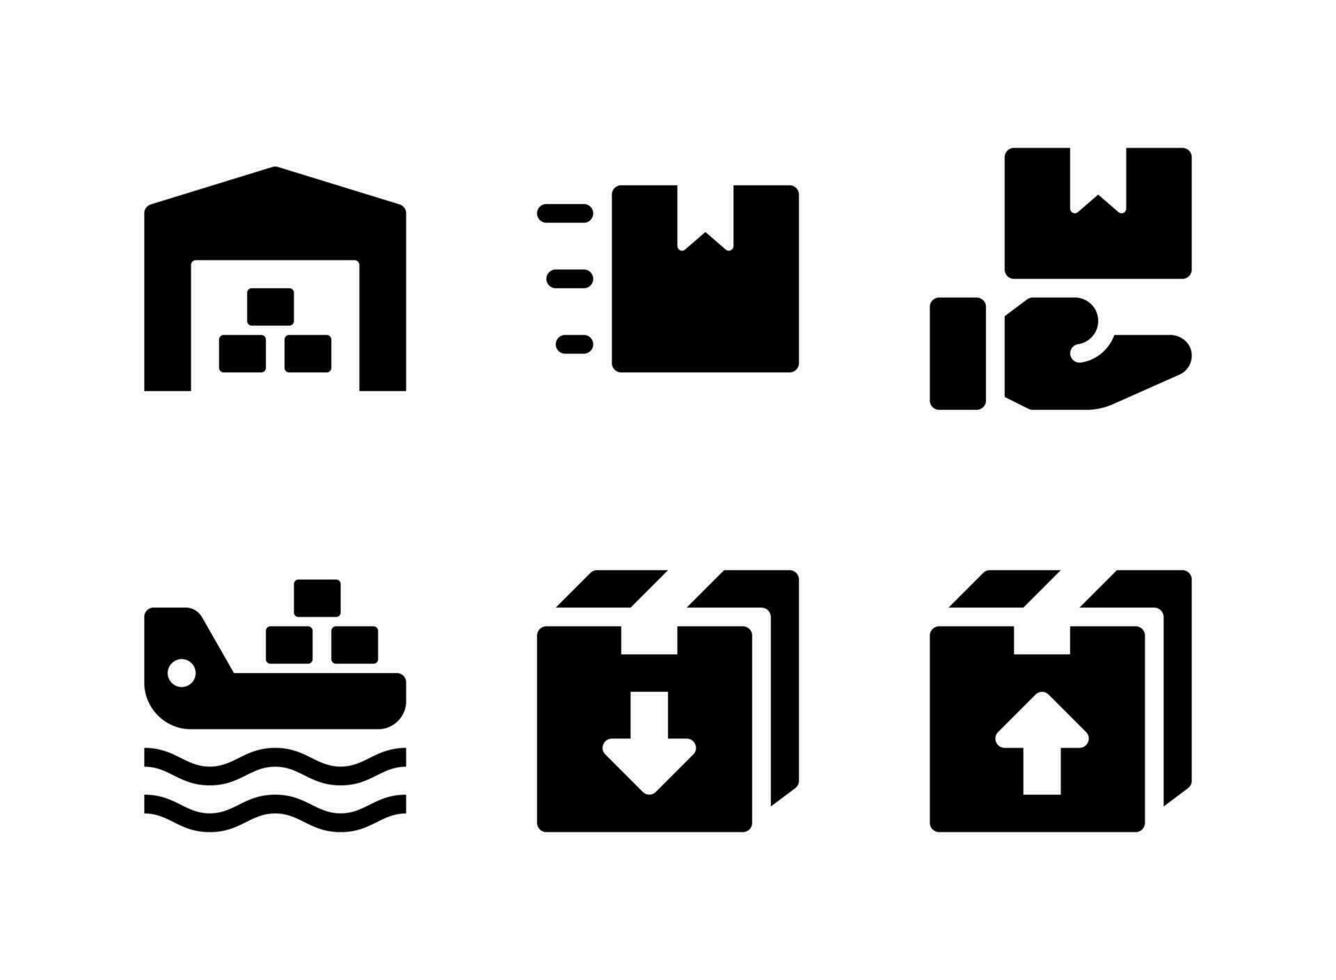 semplice set di icone solide vettoriali relative alla logistica. contiene icone come magazzino, ricezione, nave da carico, scatola e altro.